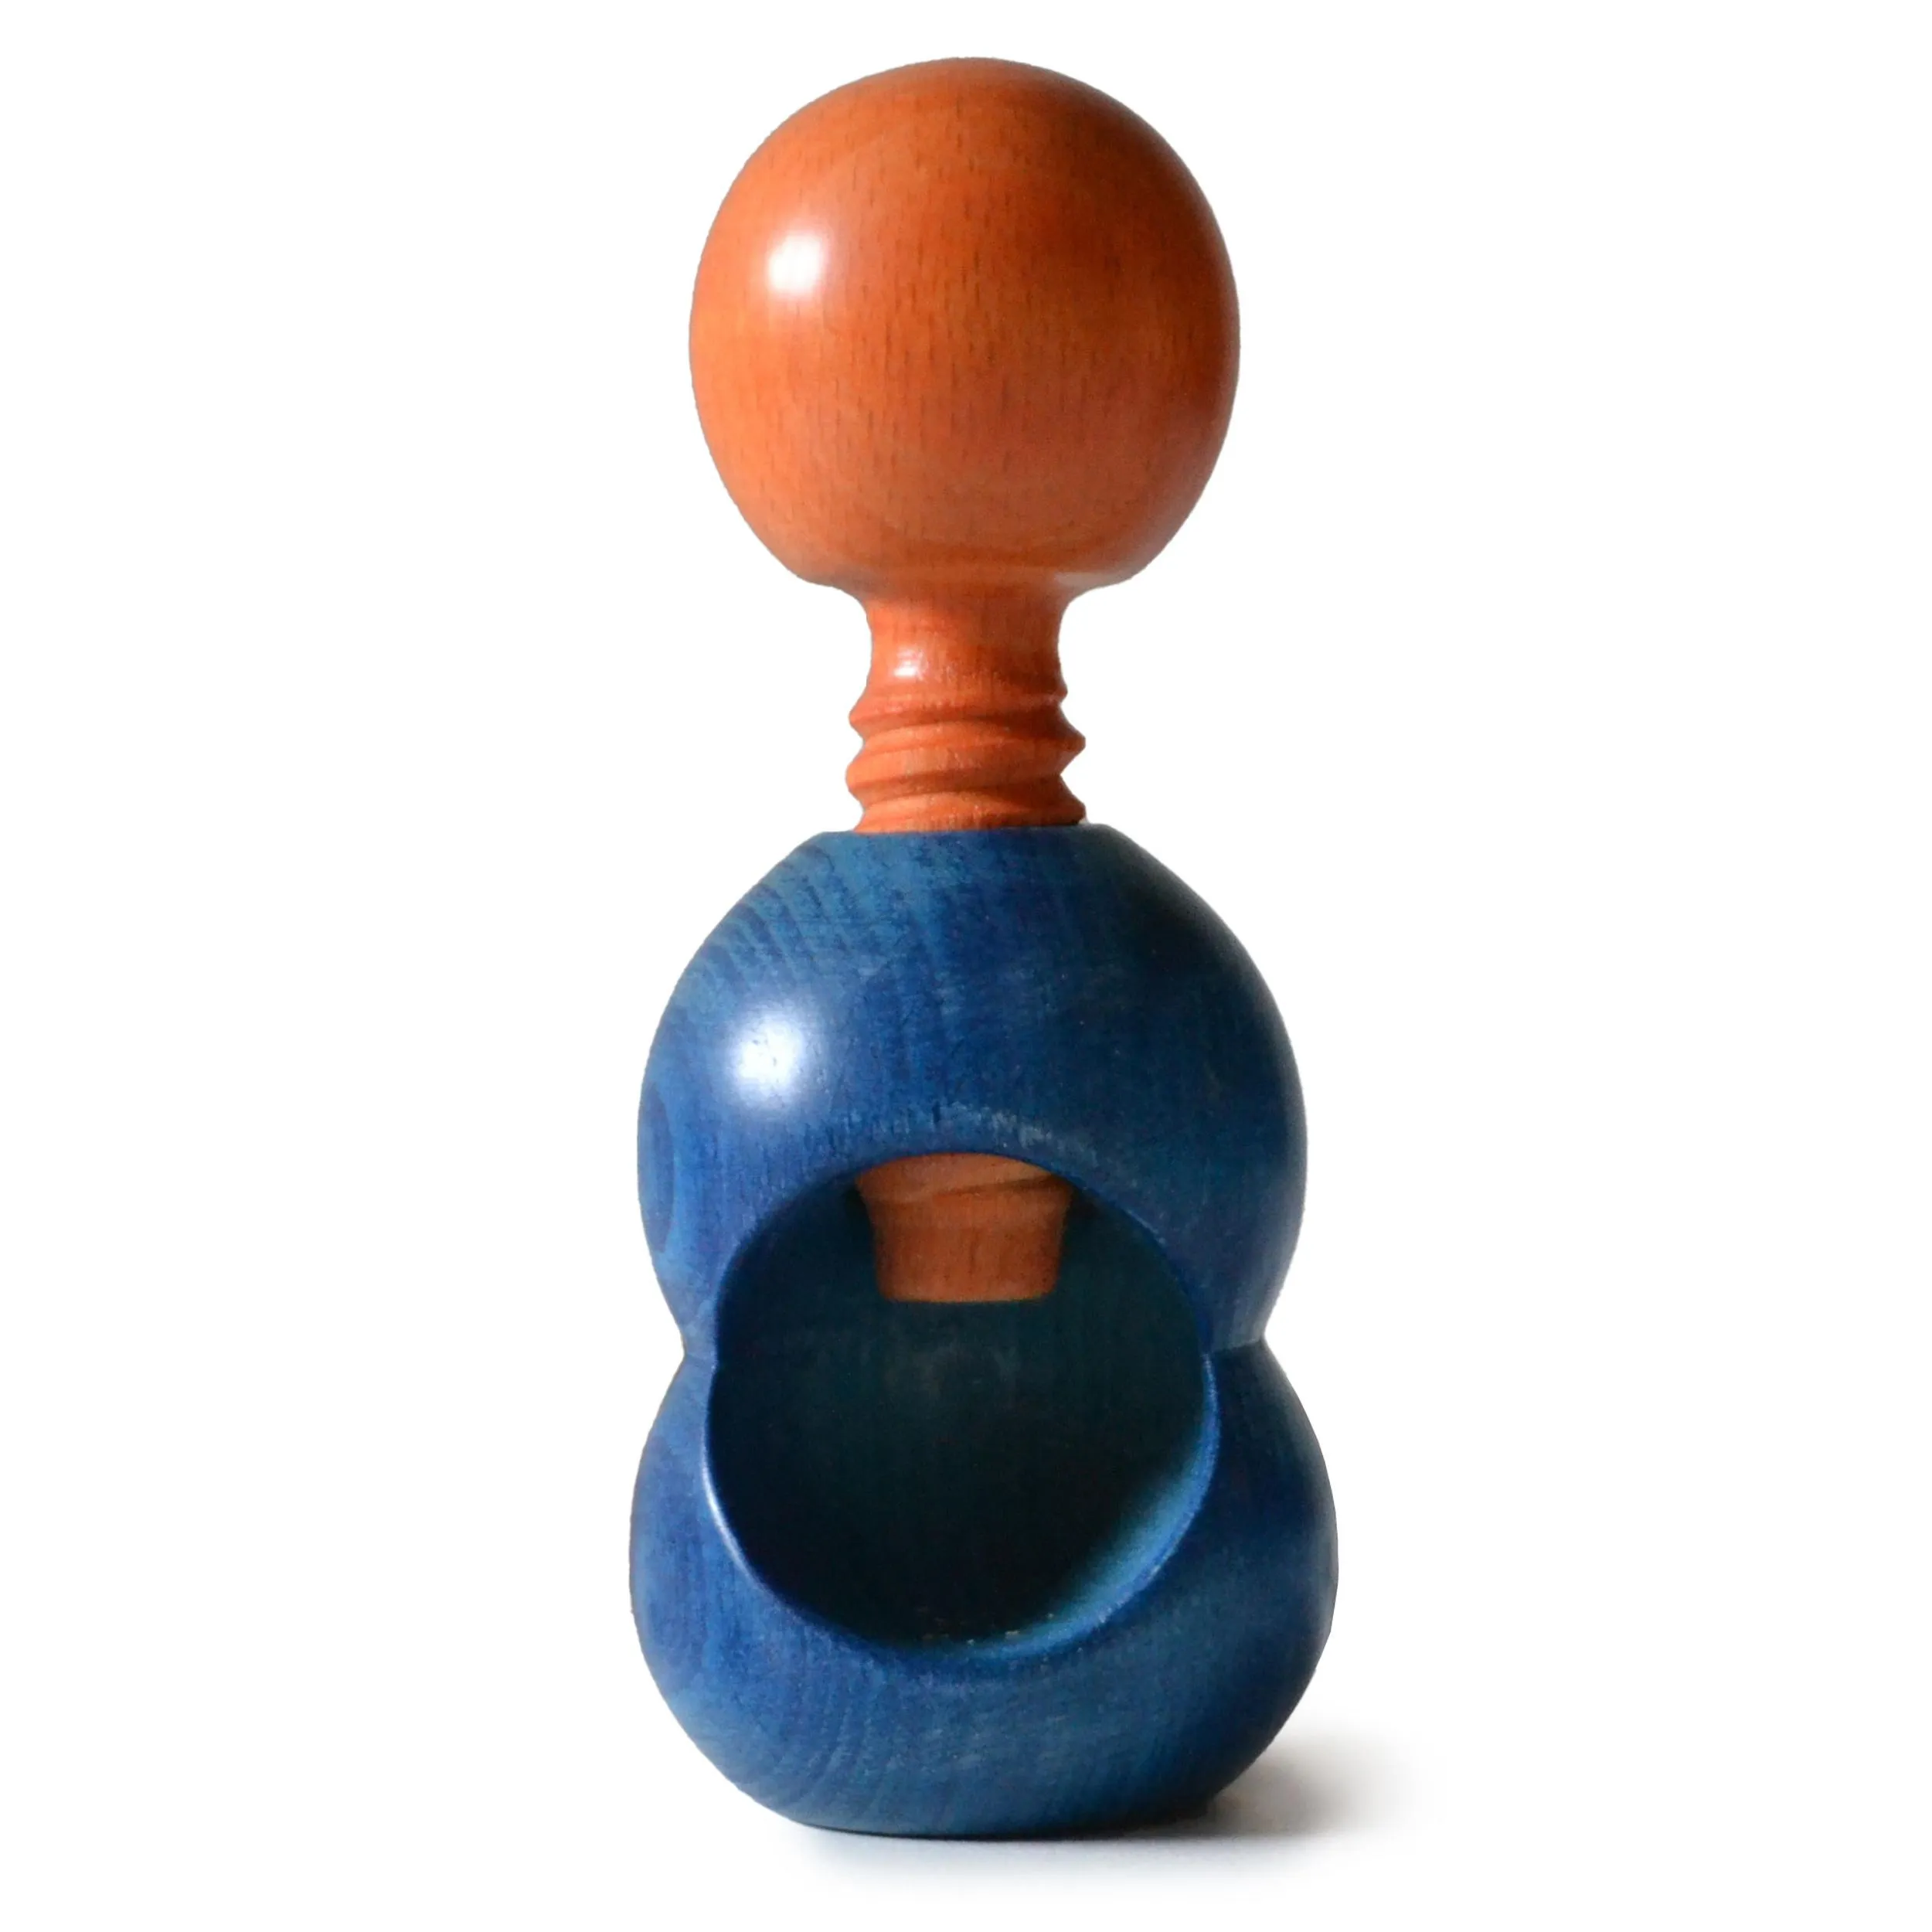 Rompinoce SFERA in legno di tiglio tornito a mano 5,5xh12 cm bicolor blu arancio